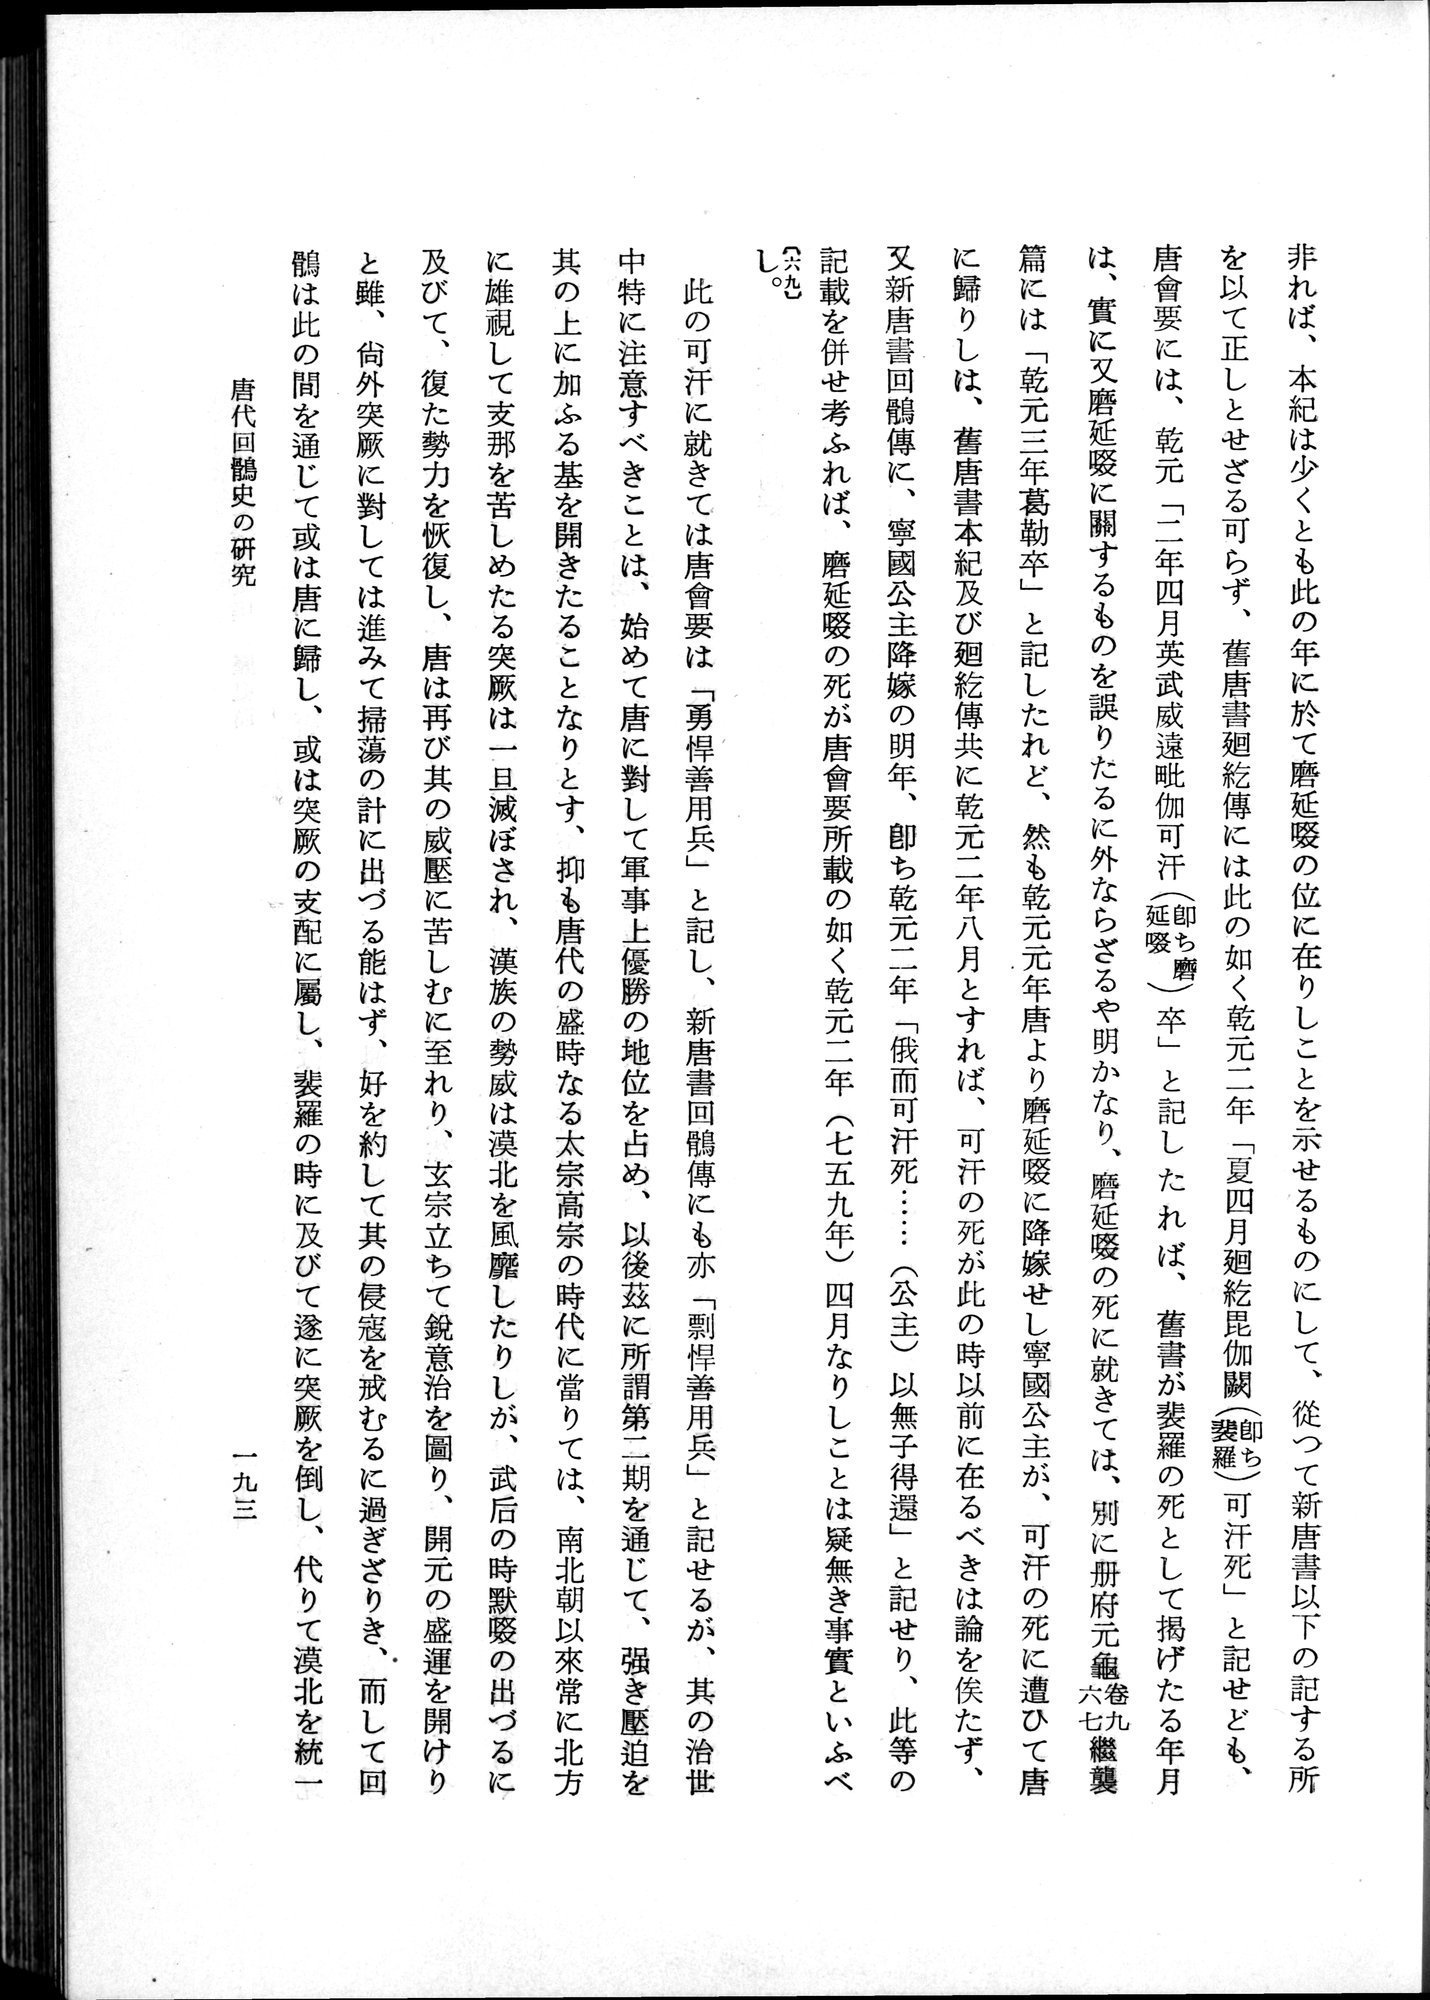 羽田博士史学論文集 : vol.1 / Page 231 (Grayscale High Resolution Image)